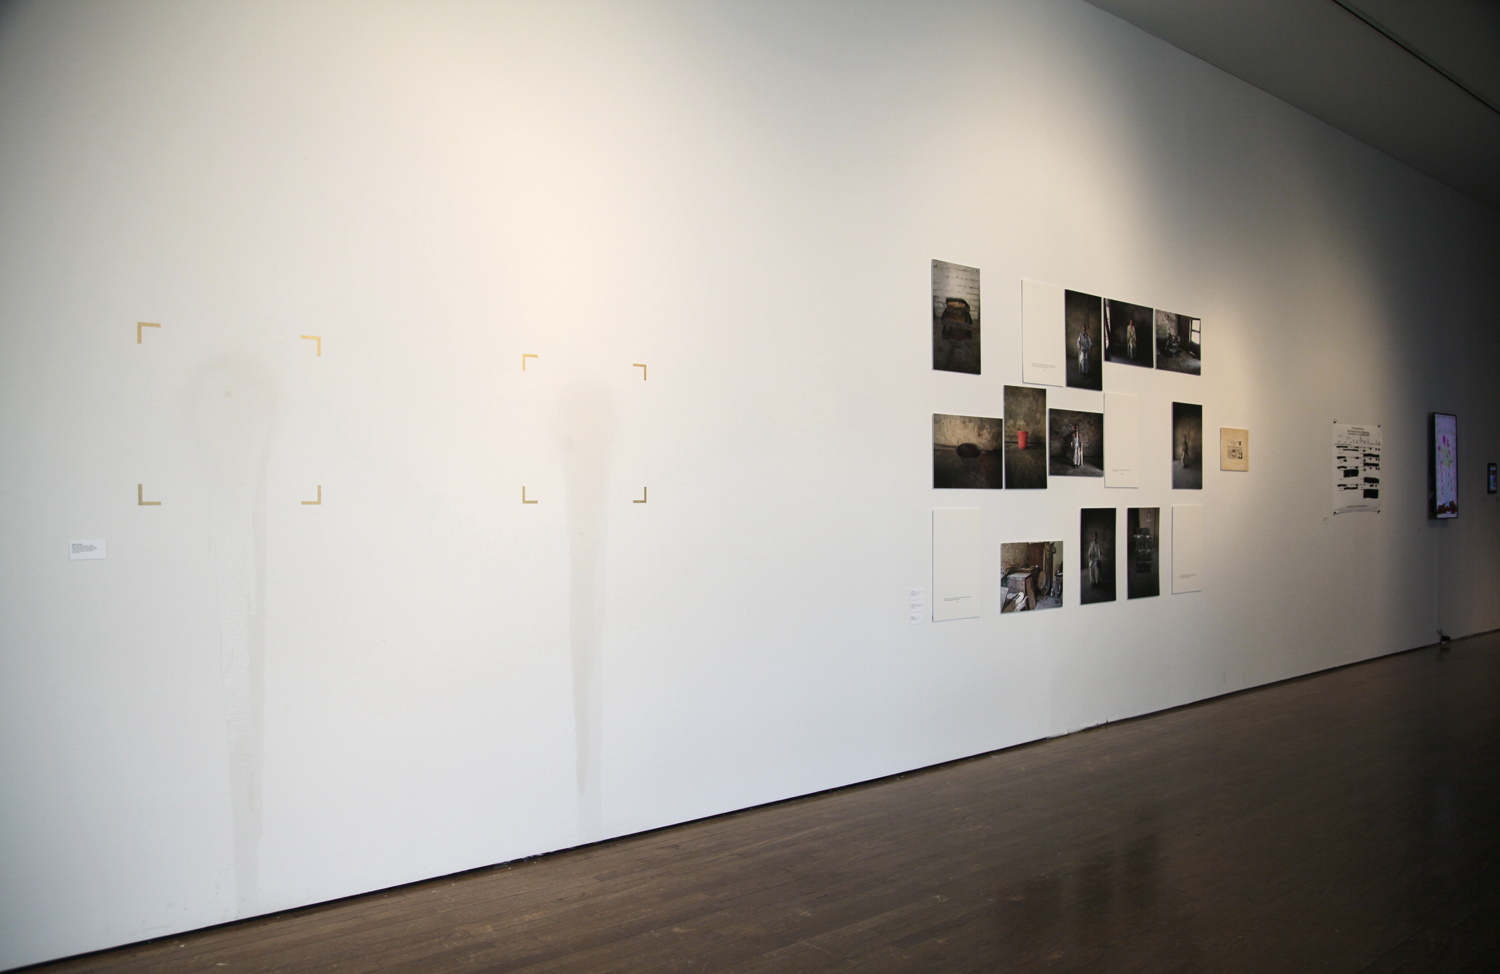  Exhibition view with Raja'a Khalid,&nbsp; Black Agar, Black Agar  (2016)&nbsp;in foreground, photograph by Sadia Shirazi. 